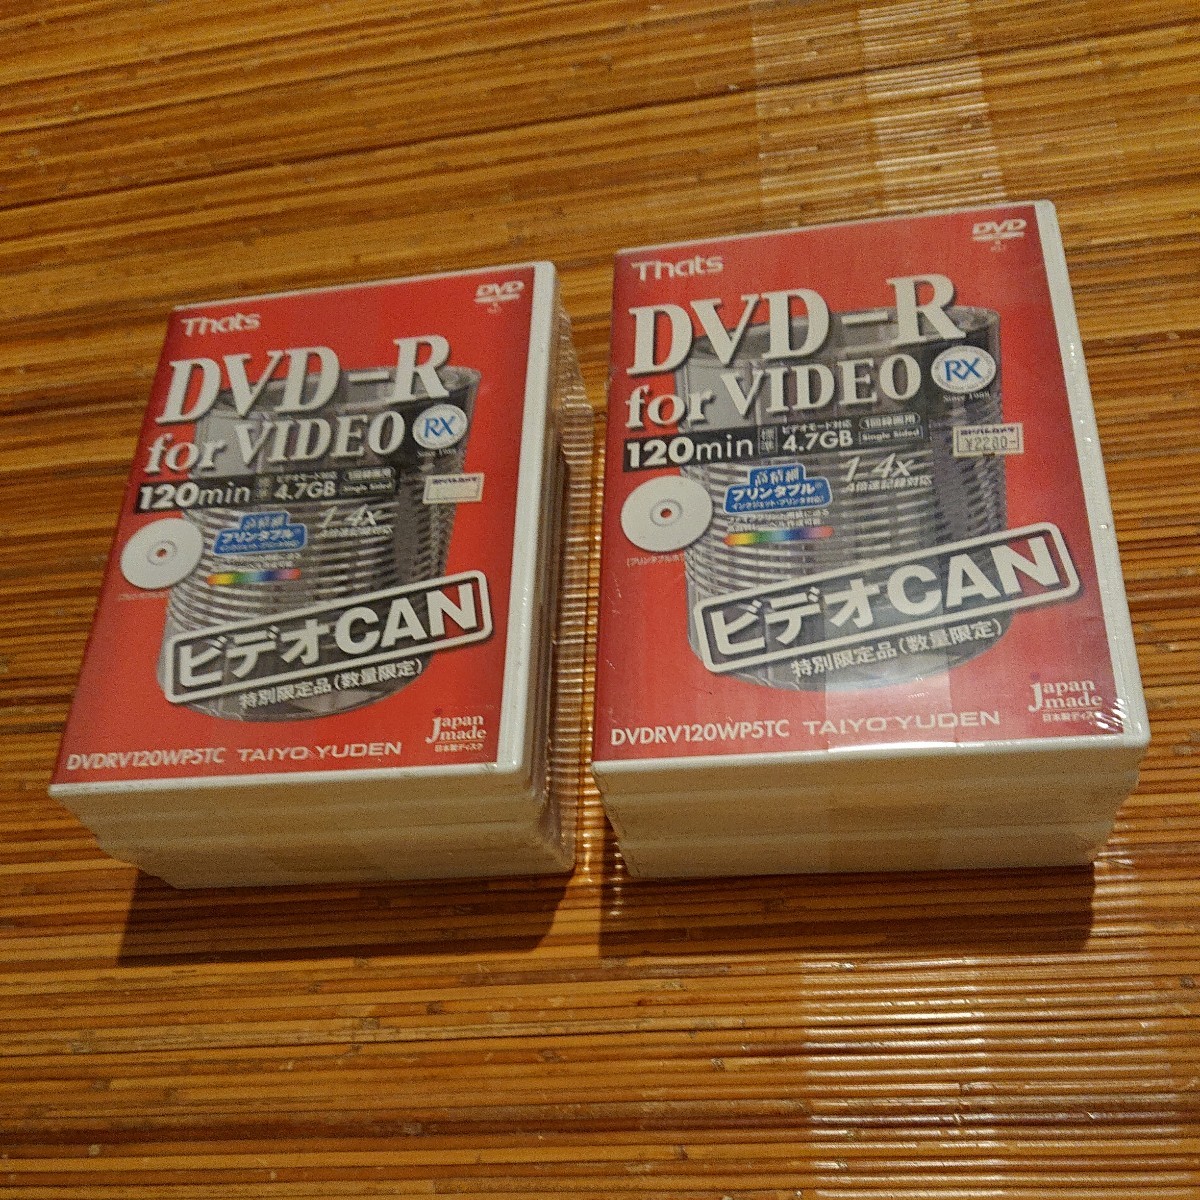 太陽誘電 That's 録画用DVD-R 120分 4.7GB プリンタブルホワイト インクジェット対応 10枚セット ケース入り 未開封 DVDRV120WP5TC 日本製_画像1